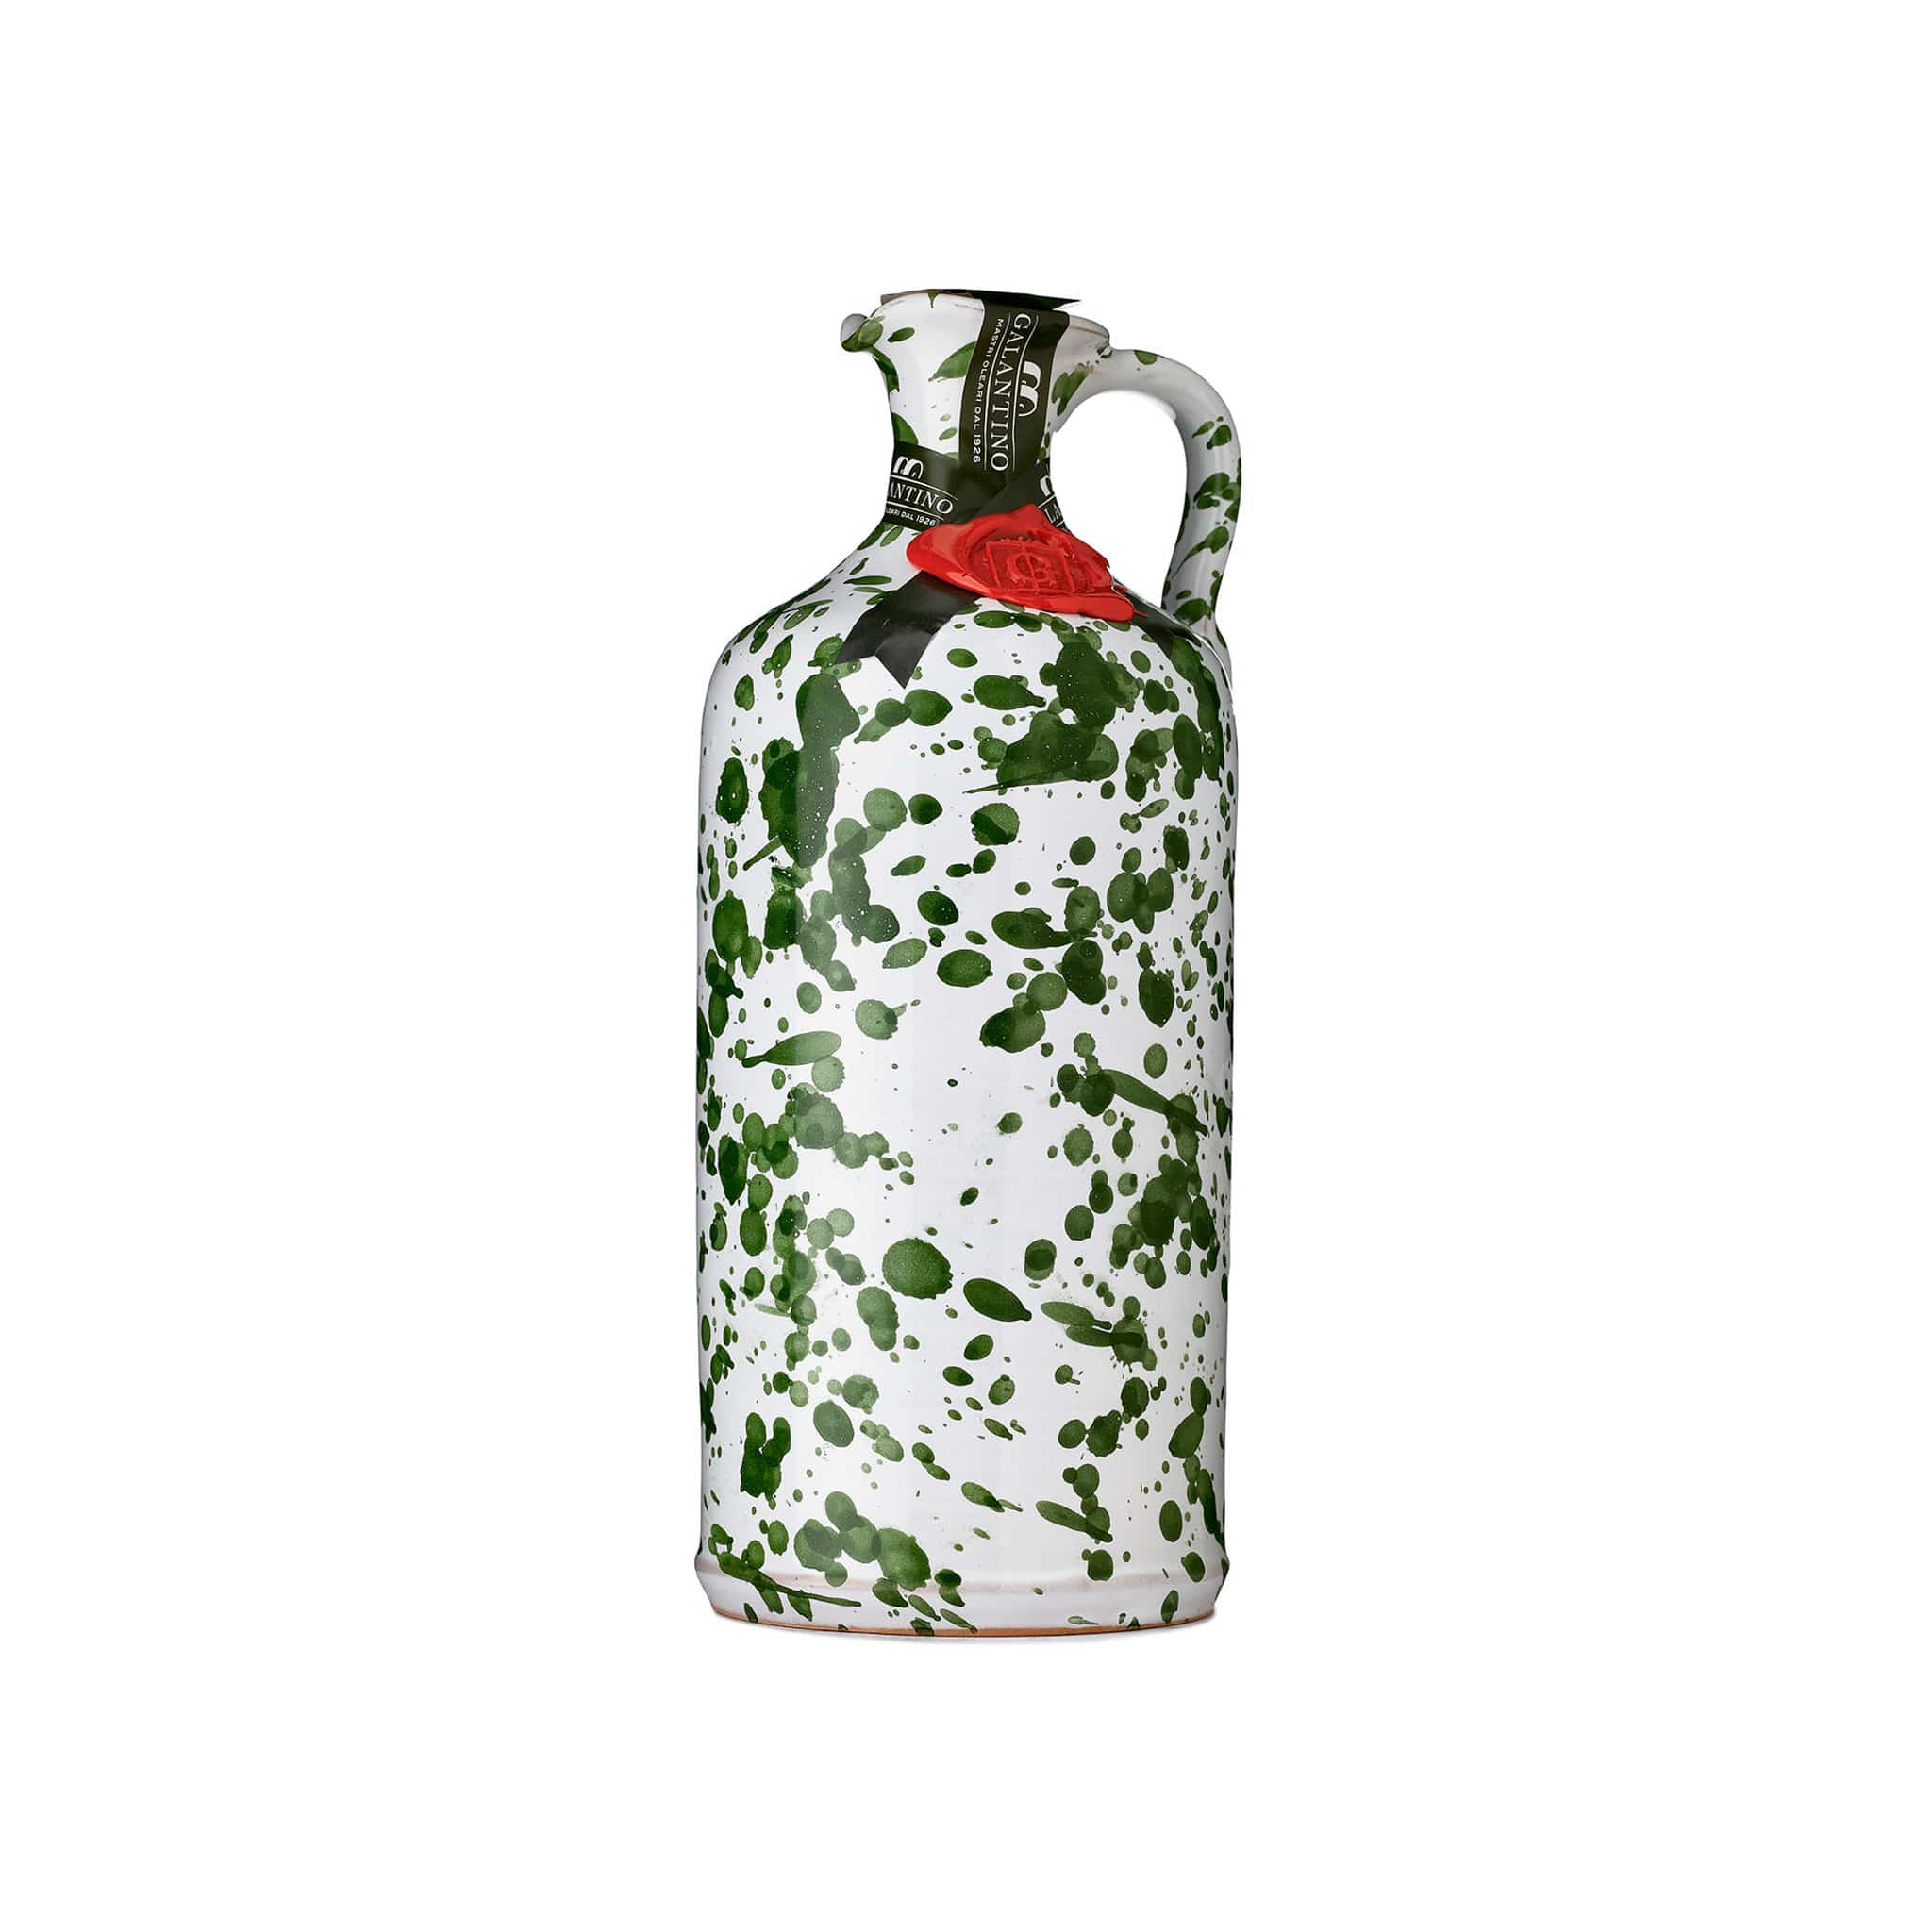 Puglian Extra Virgin Olive Oil in Green Splatter Ceramic Bottle 500ml